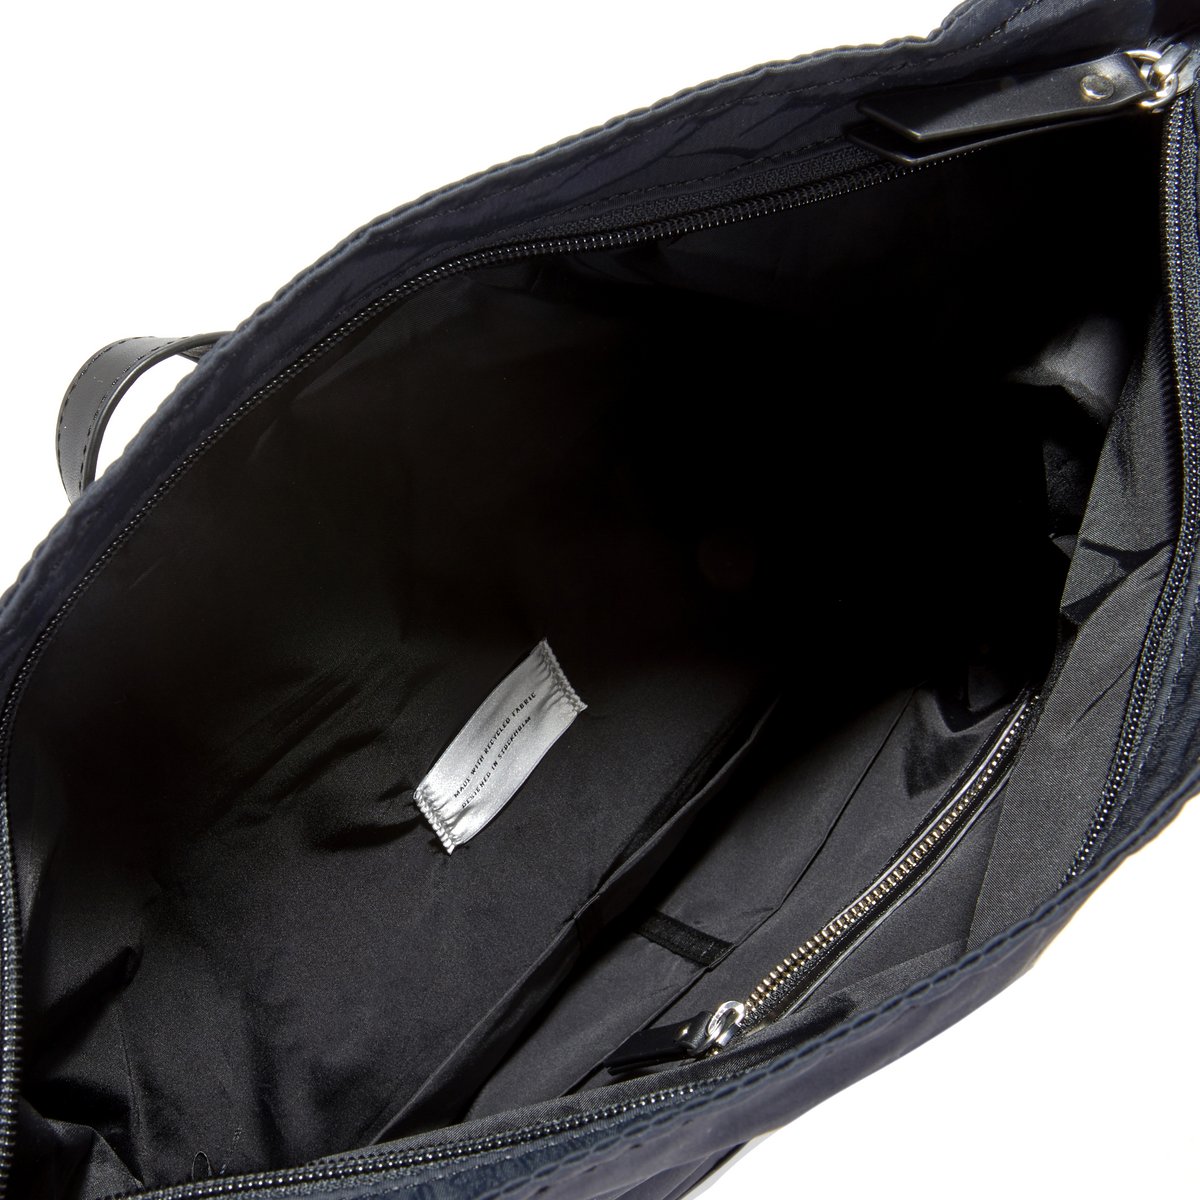 Рюкзак La Redoute л специально для ноутбука SIV единый размер черный - фото 3